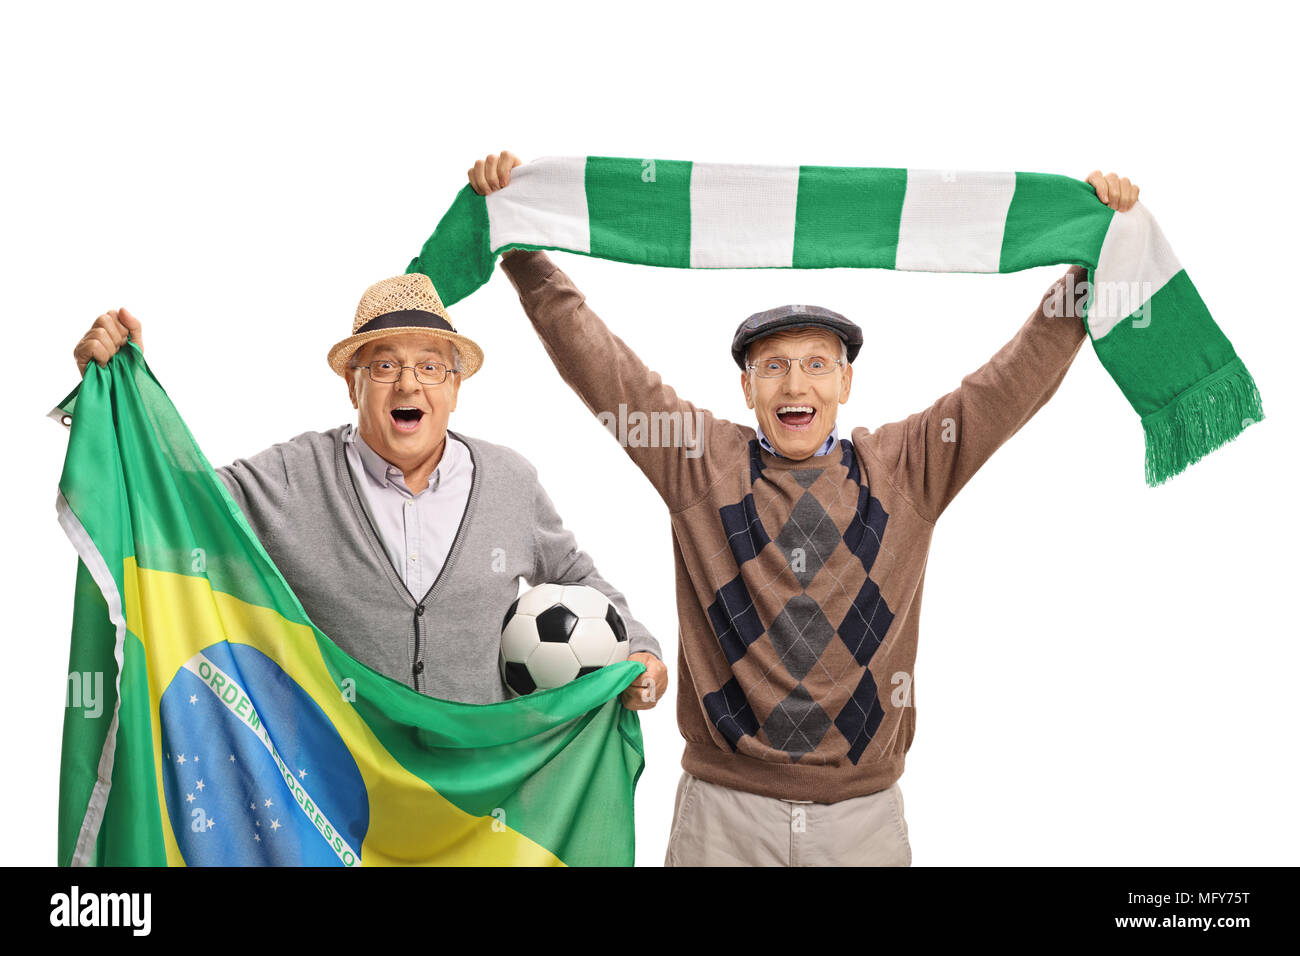 Personnes âgées gaies avec des fans de football un drapeau brésilien et un foulard isolé sur fond blanc Banque D'Images